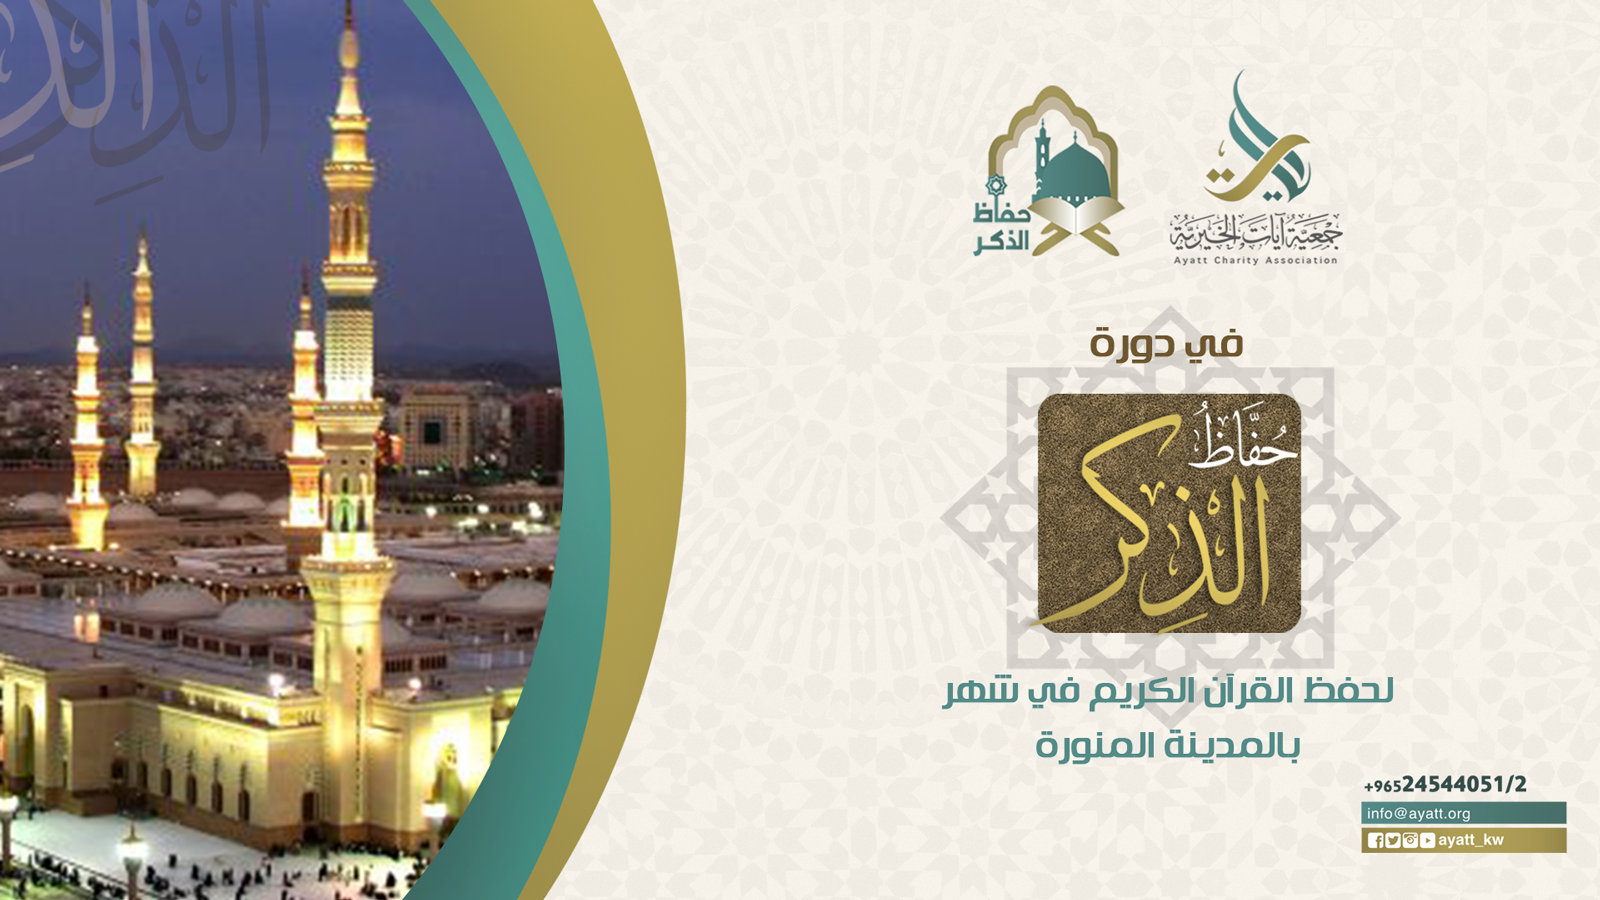 مشروع دورة حفاظ الذكر لحفظ القرآن الكريم في شهر بالمدينة المنورة